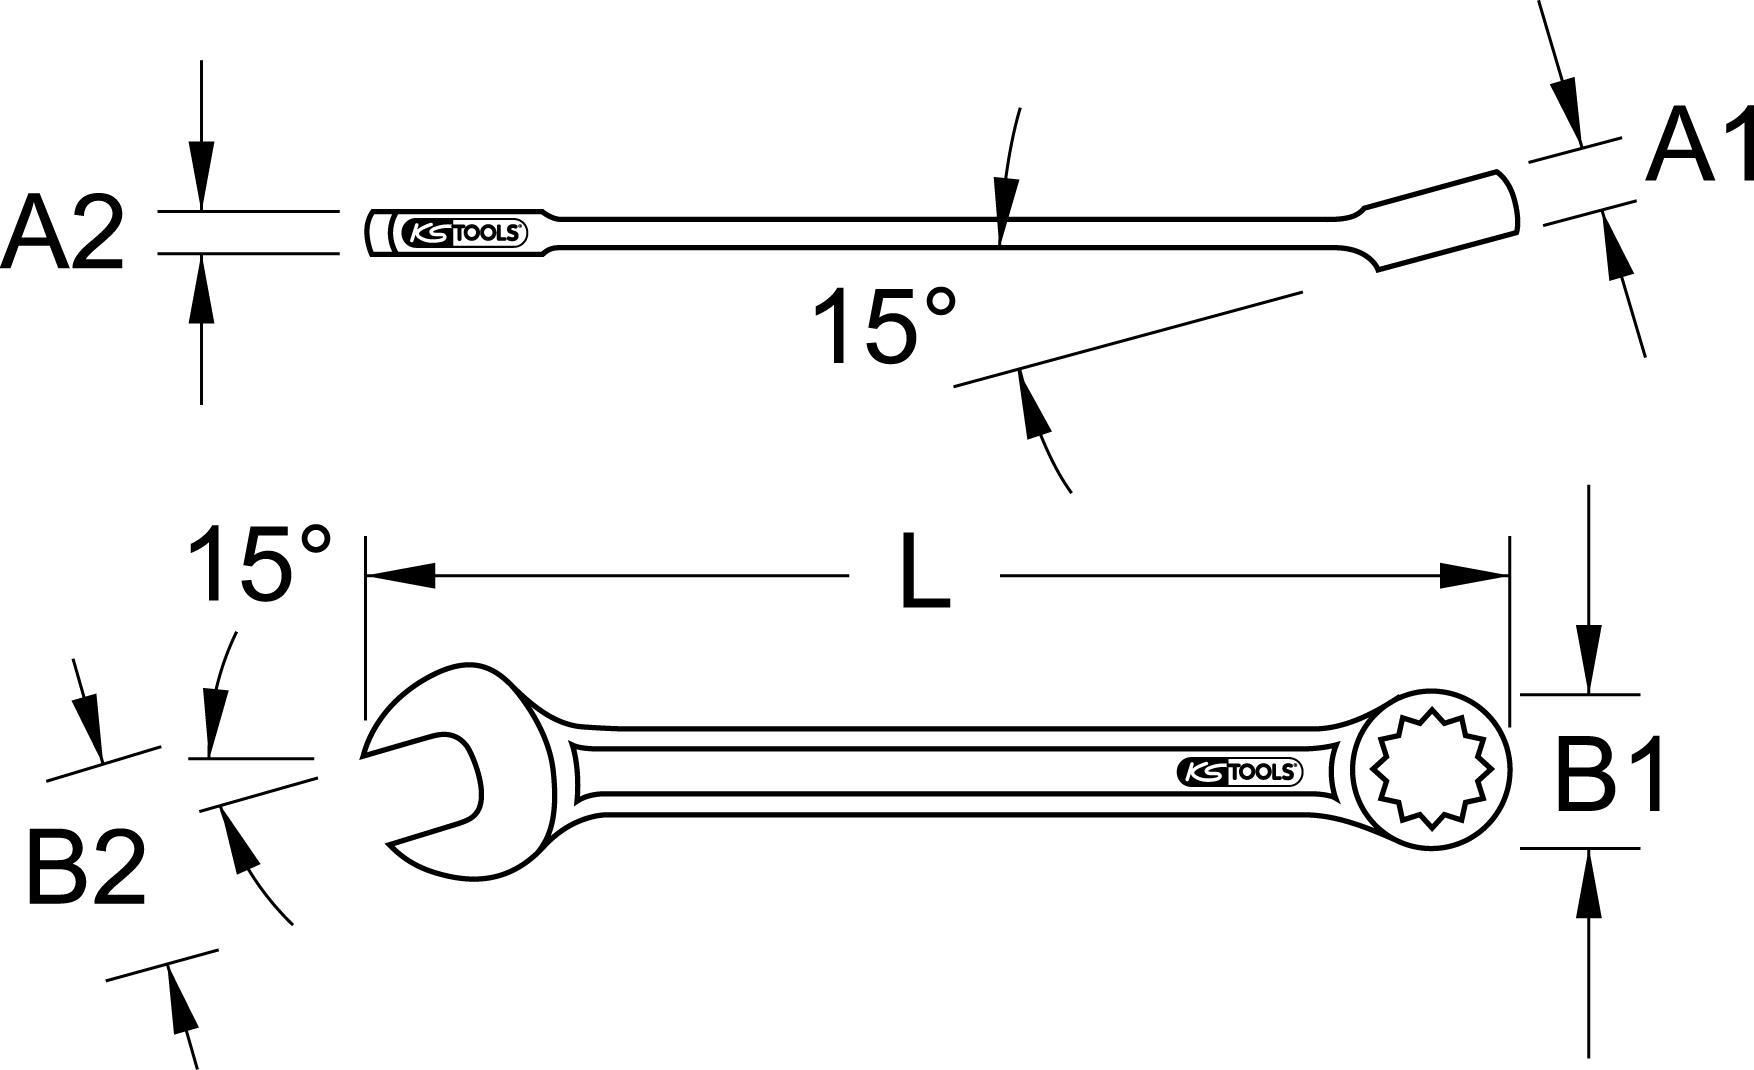 KS TOOLS CLASSIC XL Ringmaulschlüssel abgewinkelt,23mm (517.1523)